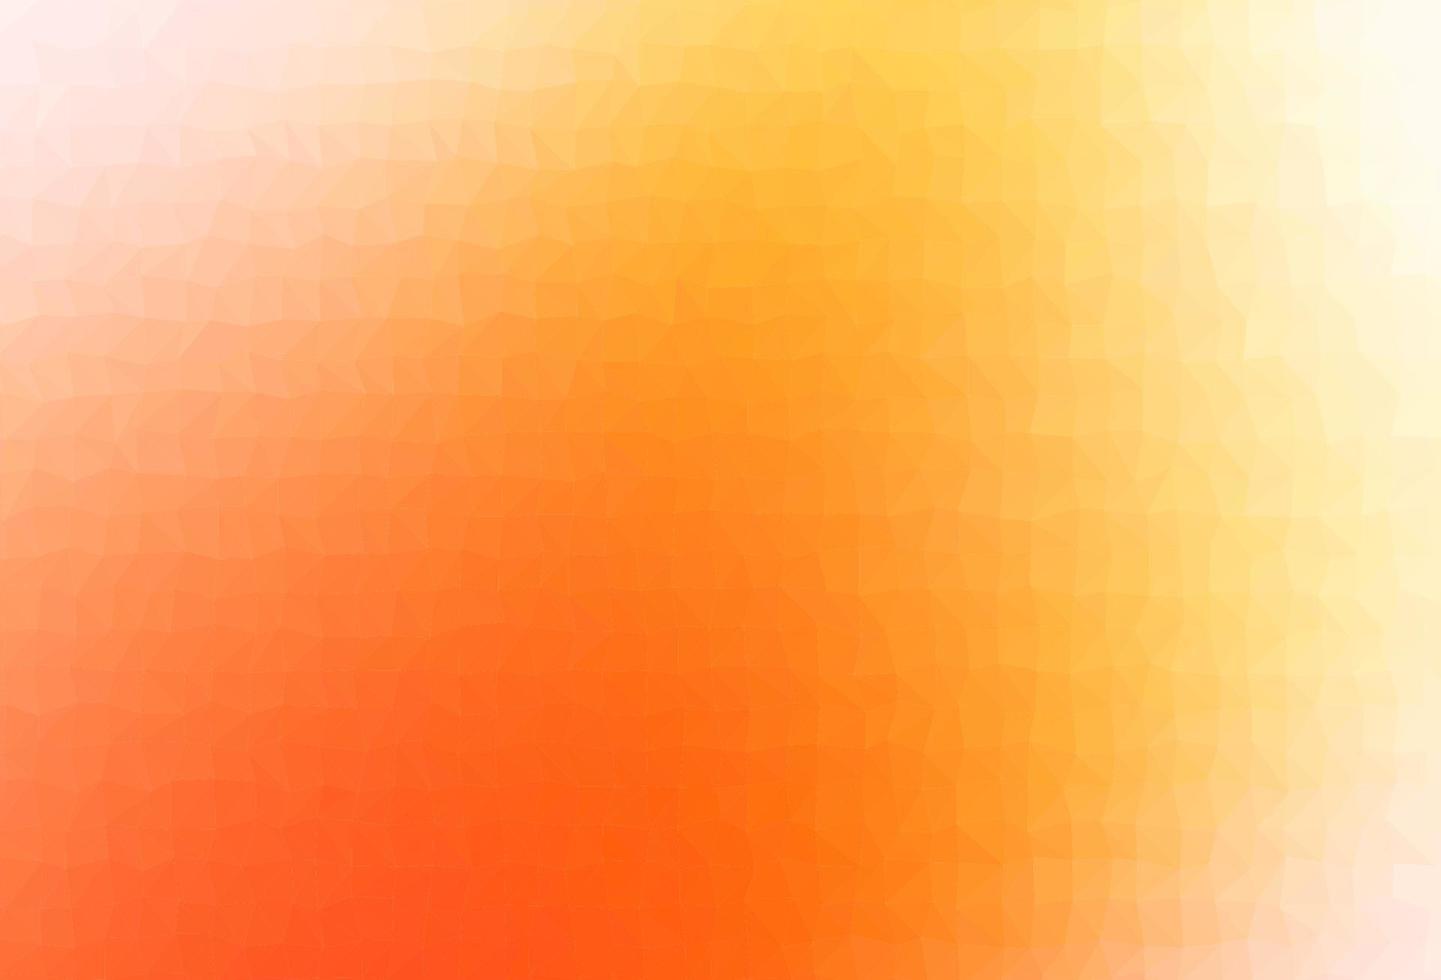 luz de fundo abstrato de polígono de vetor amarelo, laranja.